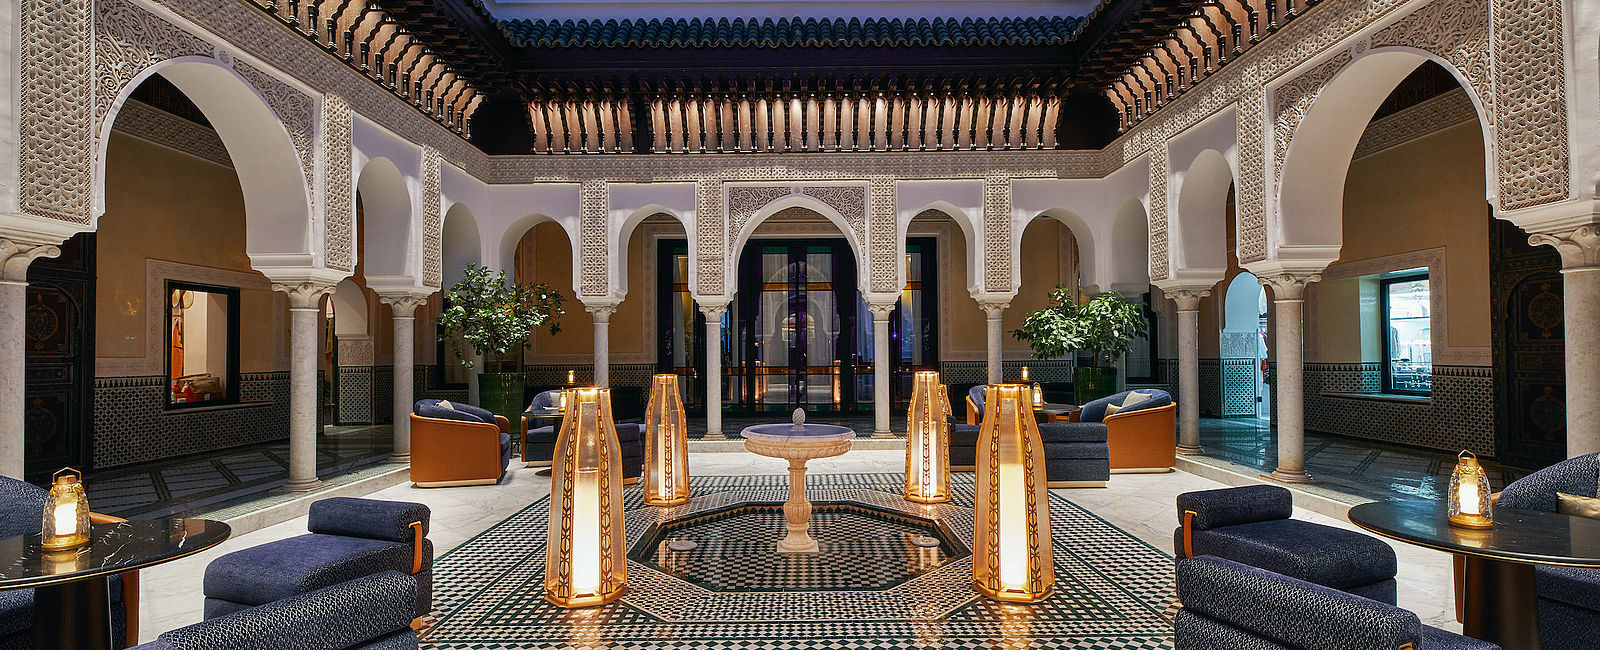 HOTEL ANGEBOTE
 La Mamounia Marrakech: The Very Marocco 
